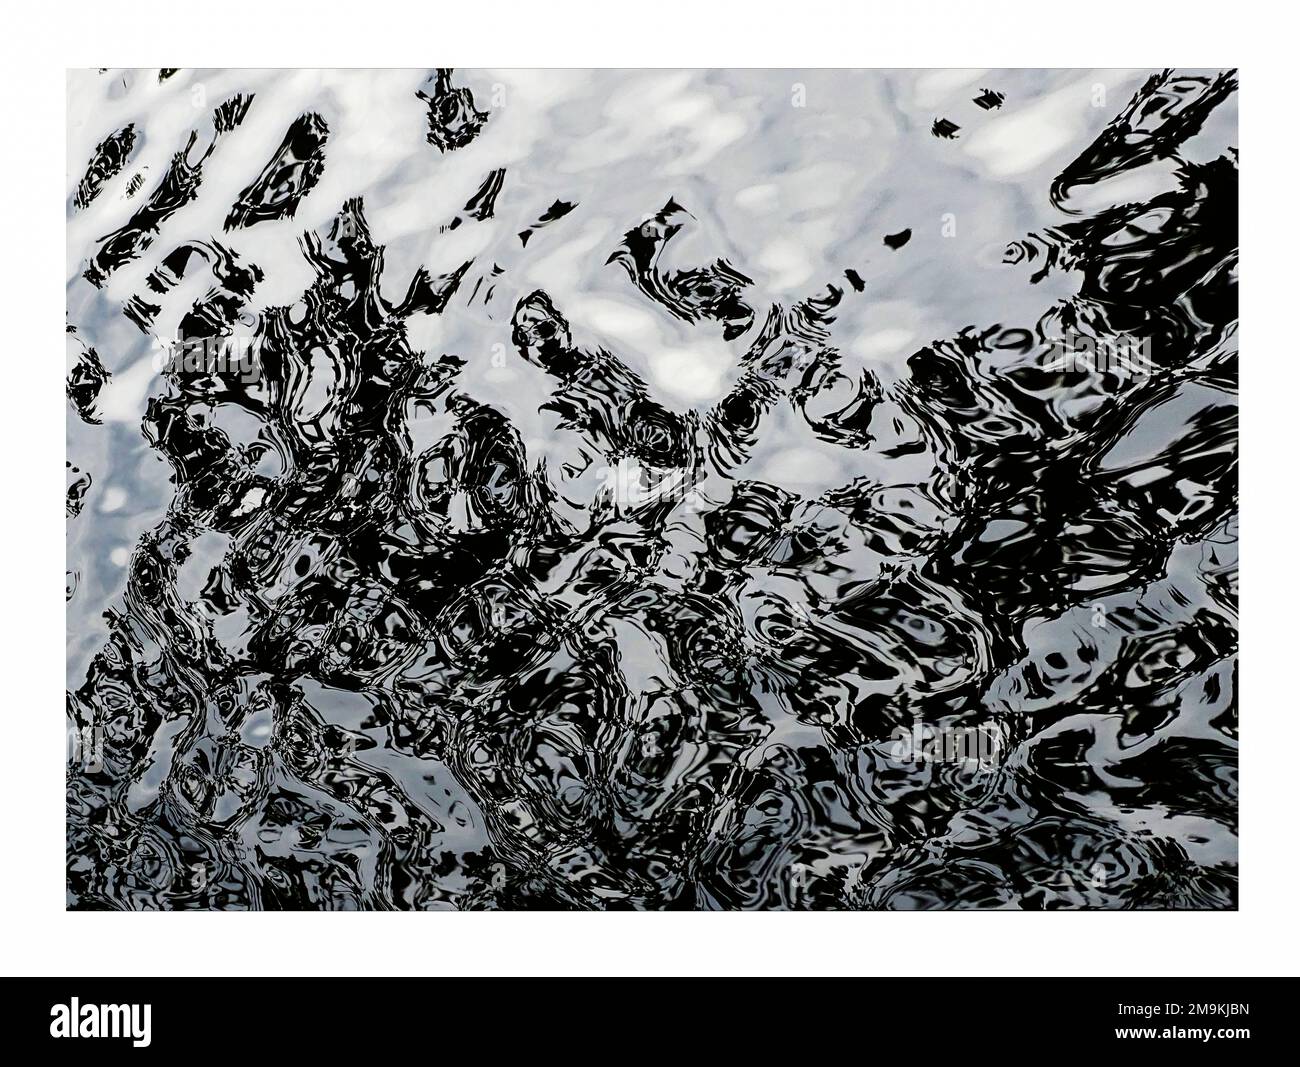 Fotografía abstracta de ondas y reflejos en el agua Foto de stock